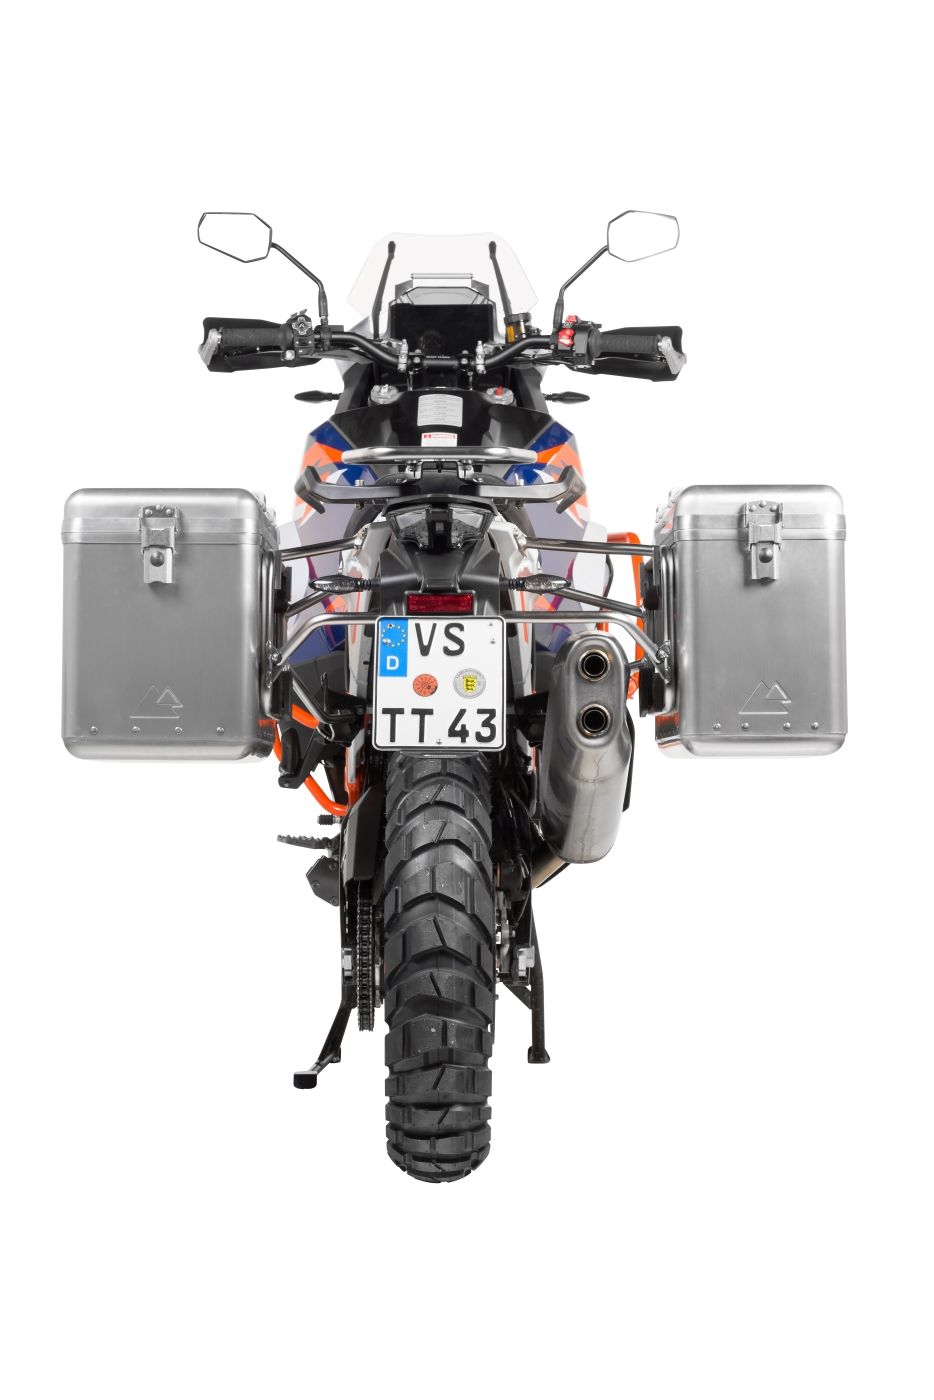 Garage tente pliable compatible avec KTM 1290 Super Duke R Housse Motoguard  XL ✓ Achetez maintenant !